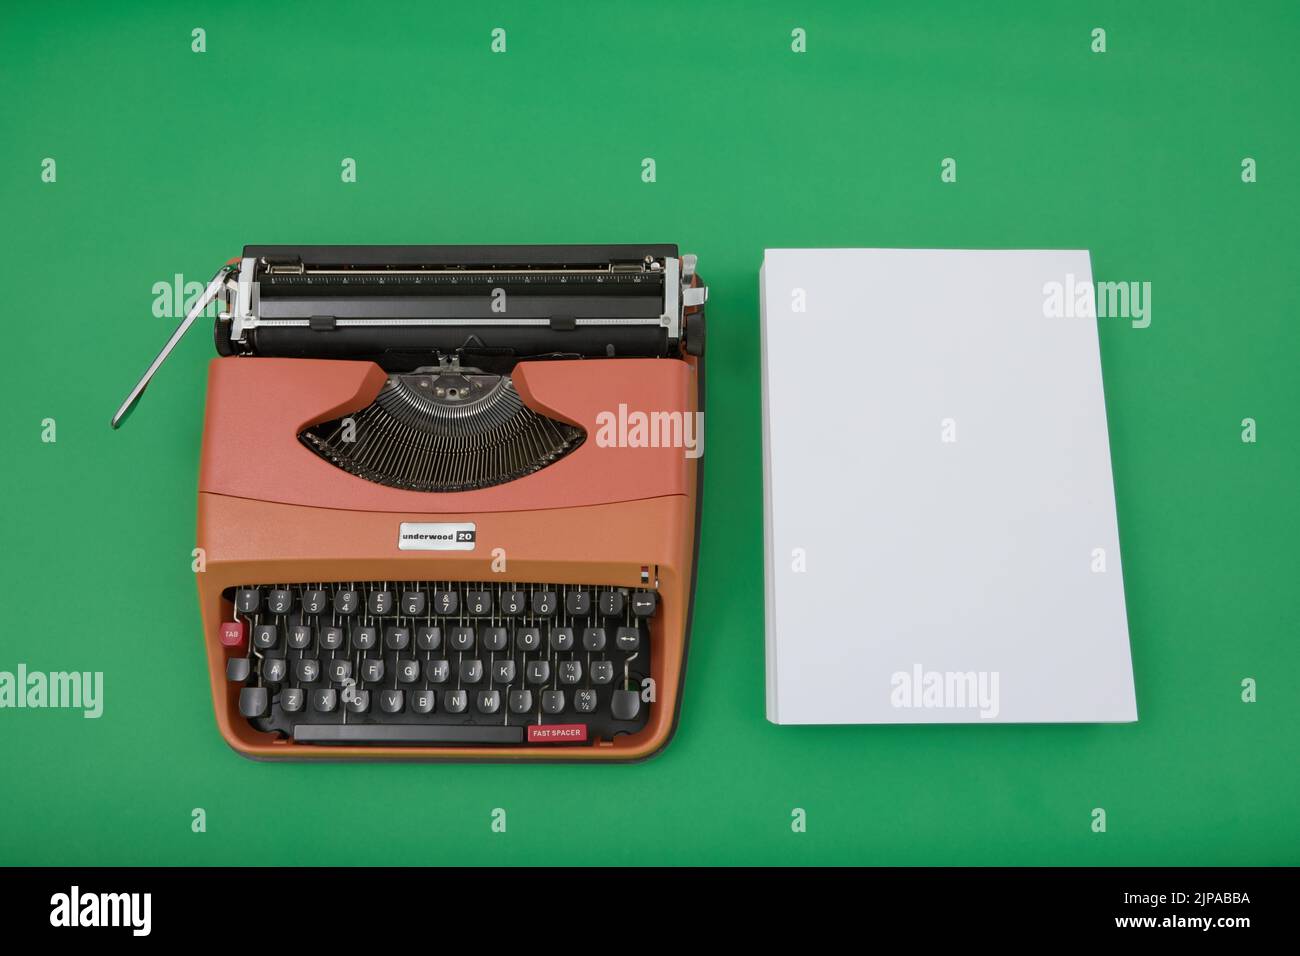 Photographie d'une machine à écrire Underwood 20 des années 1970 sur fond vert chroma. Banque D'Images